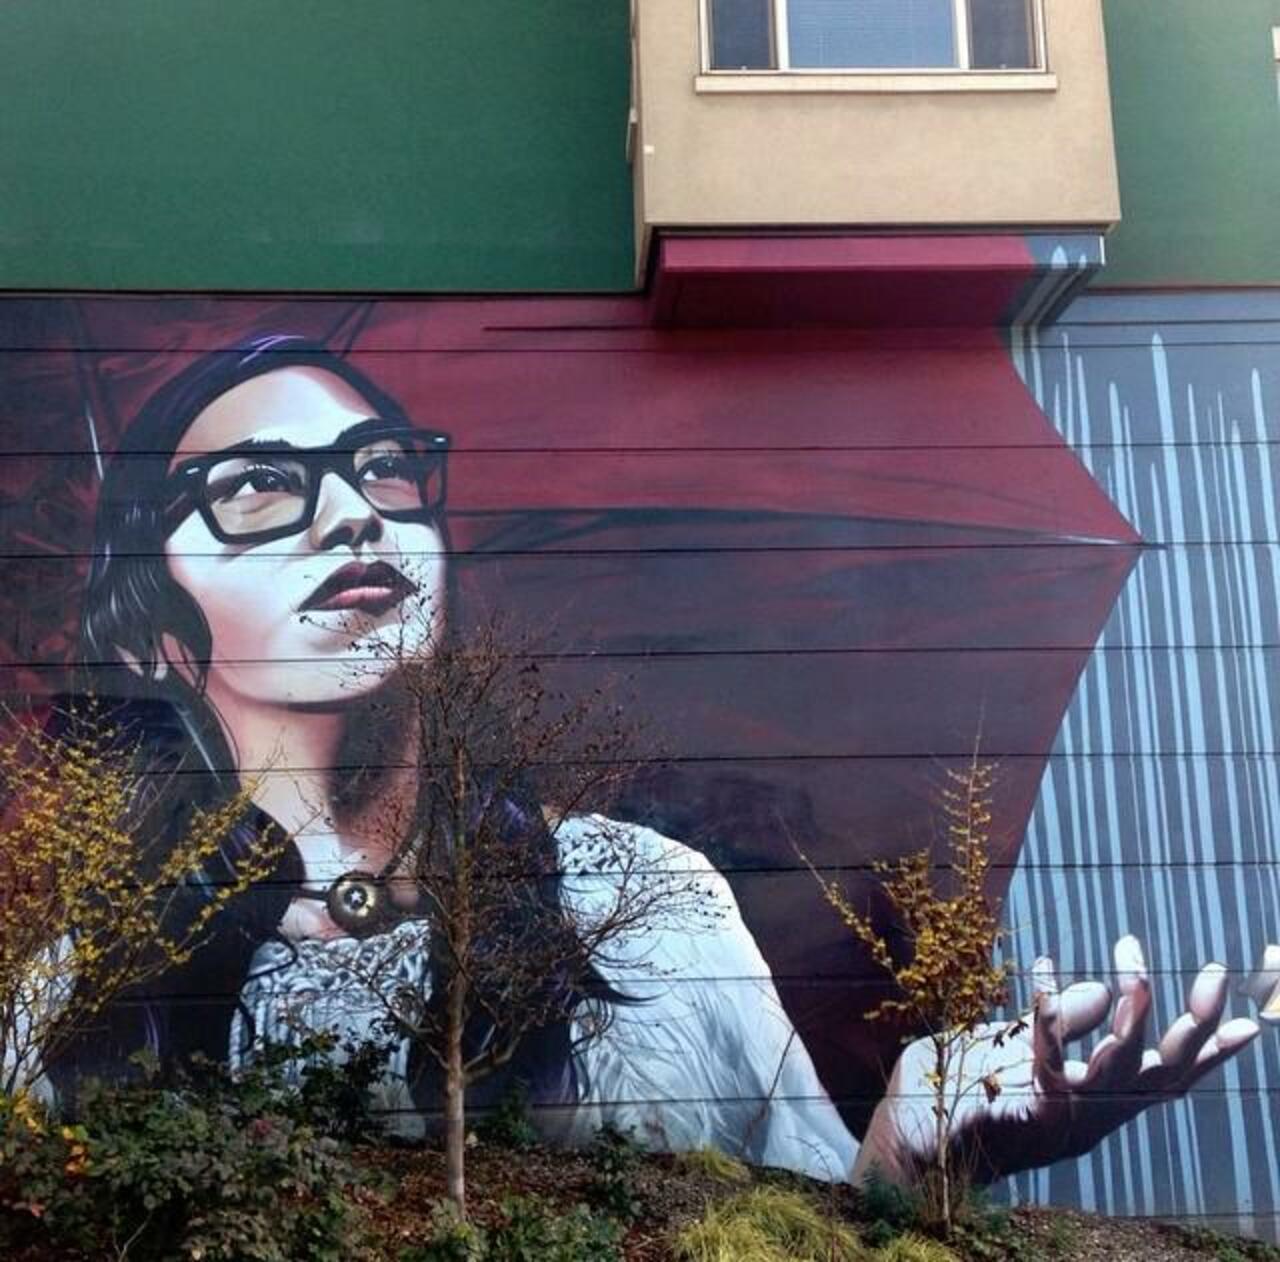 Artist Eras MFK Street Art piece in Capitol Hill, Seattle

#art #mural #graffiti #streetart http://t.co/kIF3mtgQBd